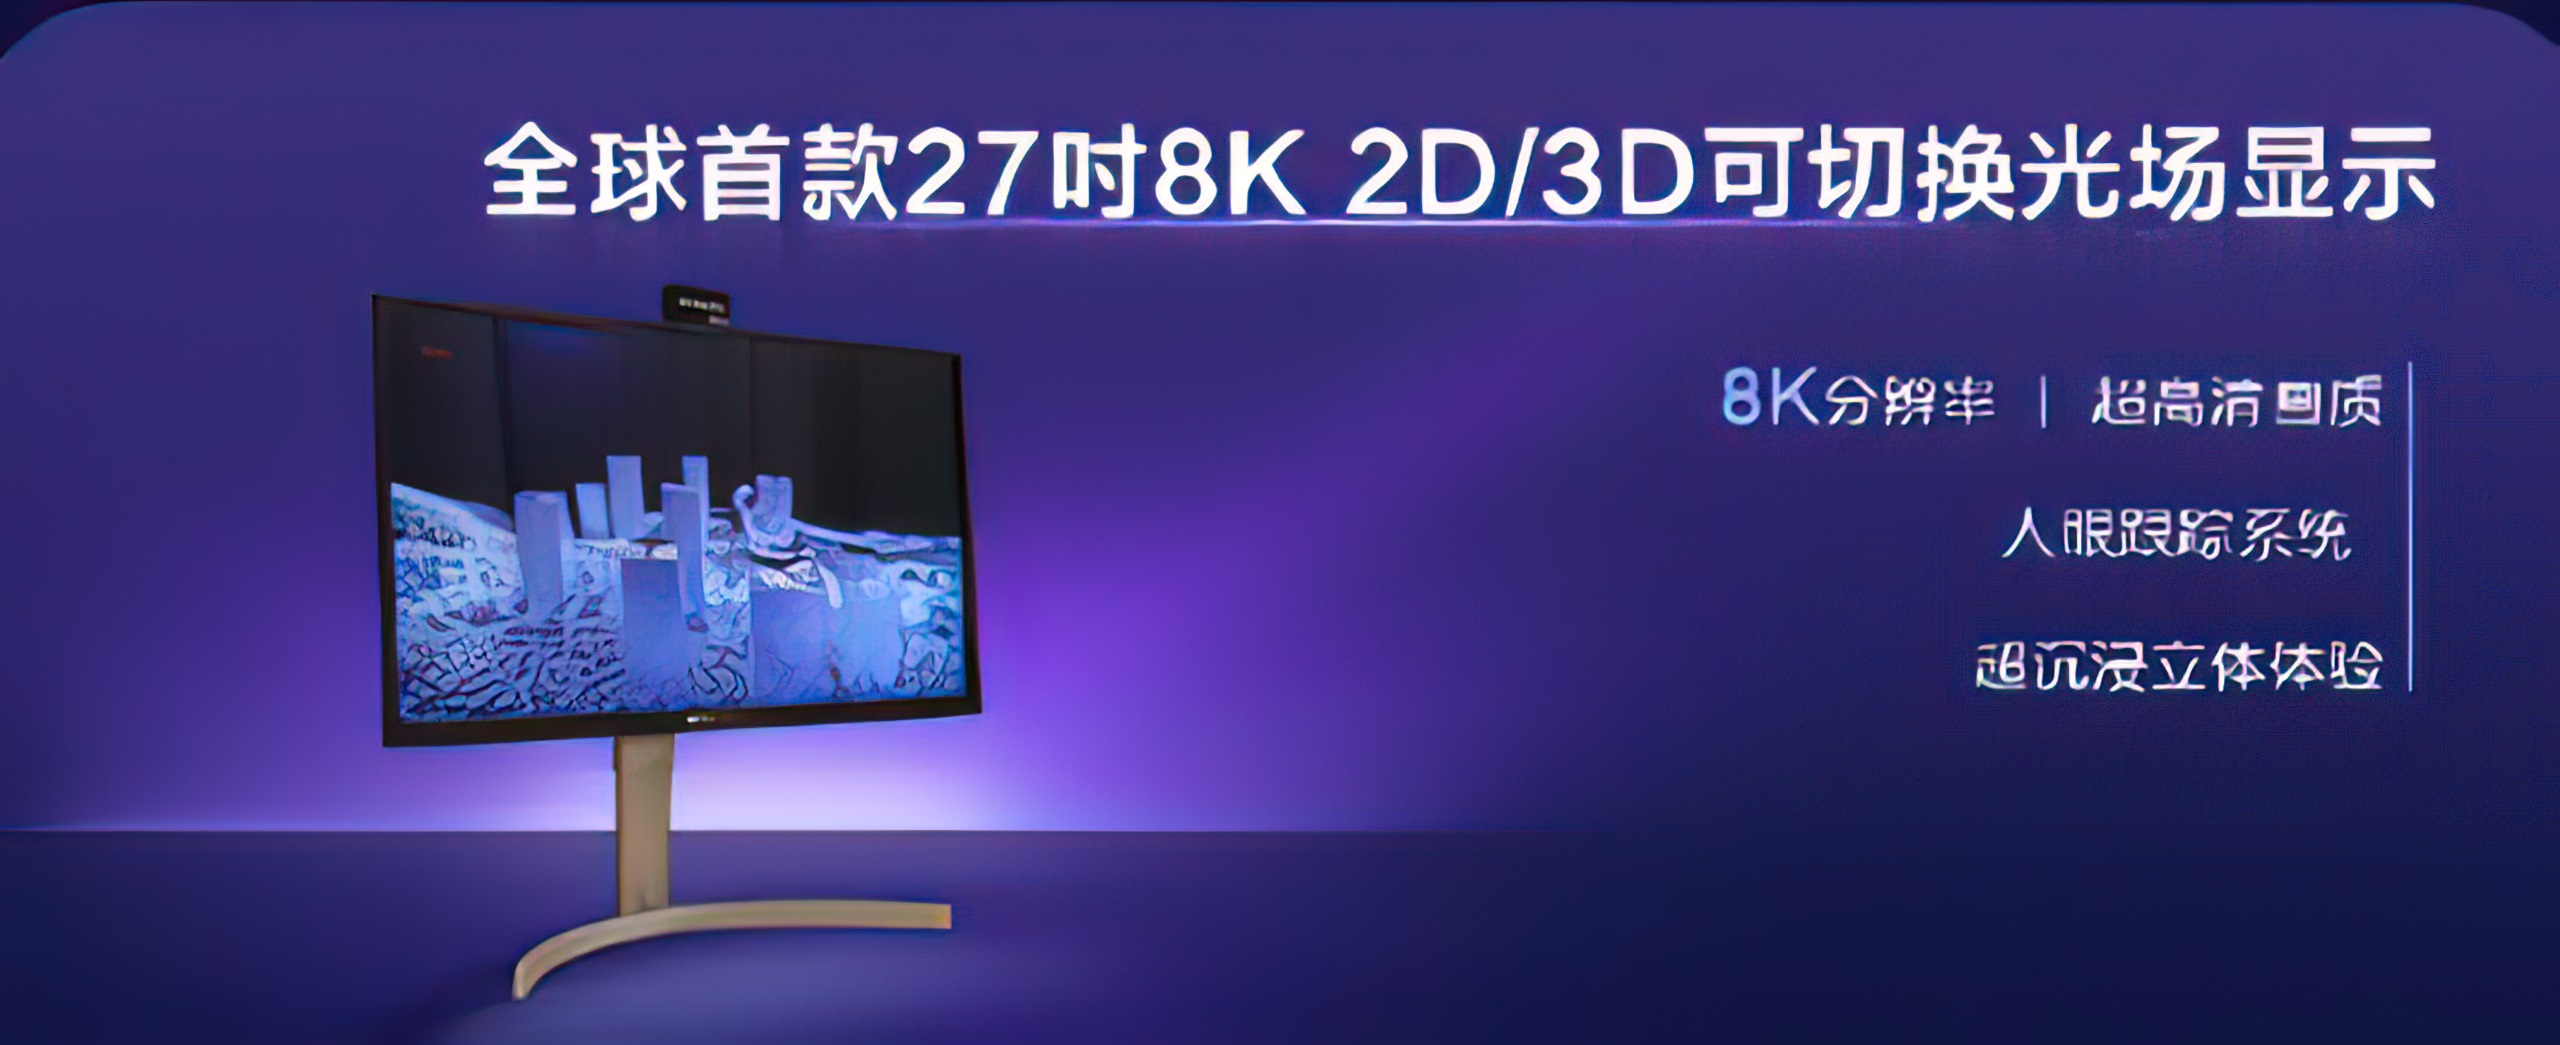 TCL-27 8k monitor gaming